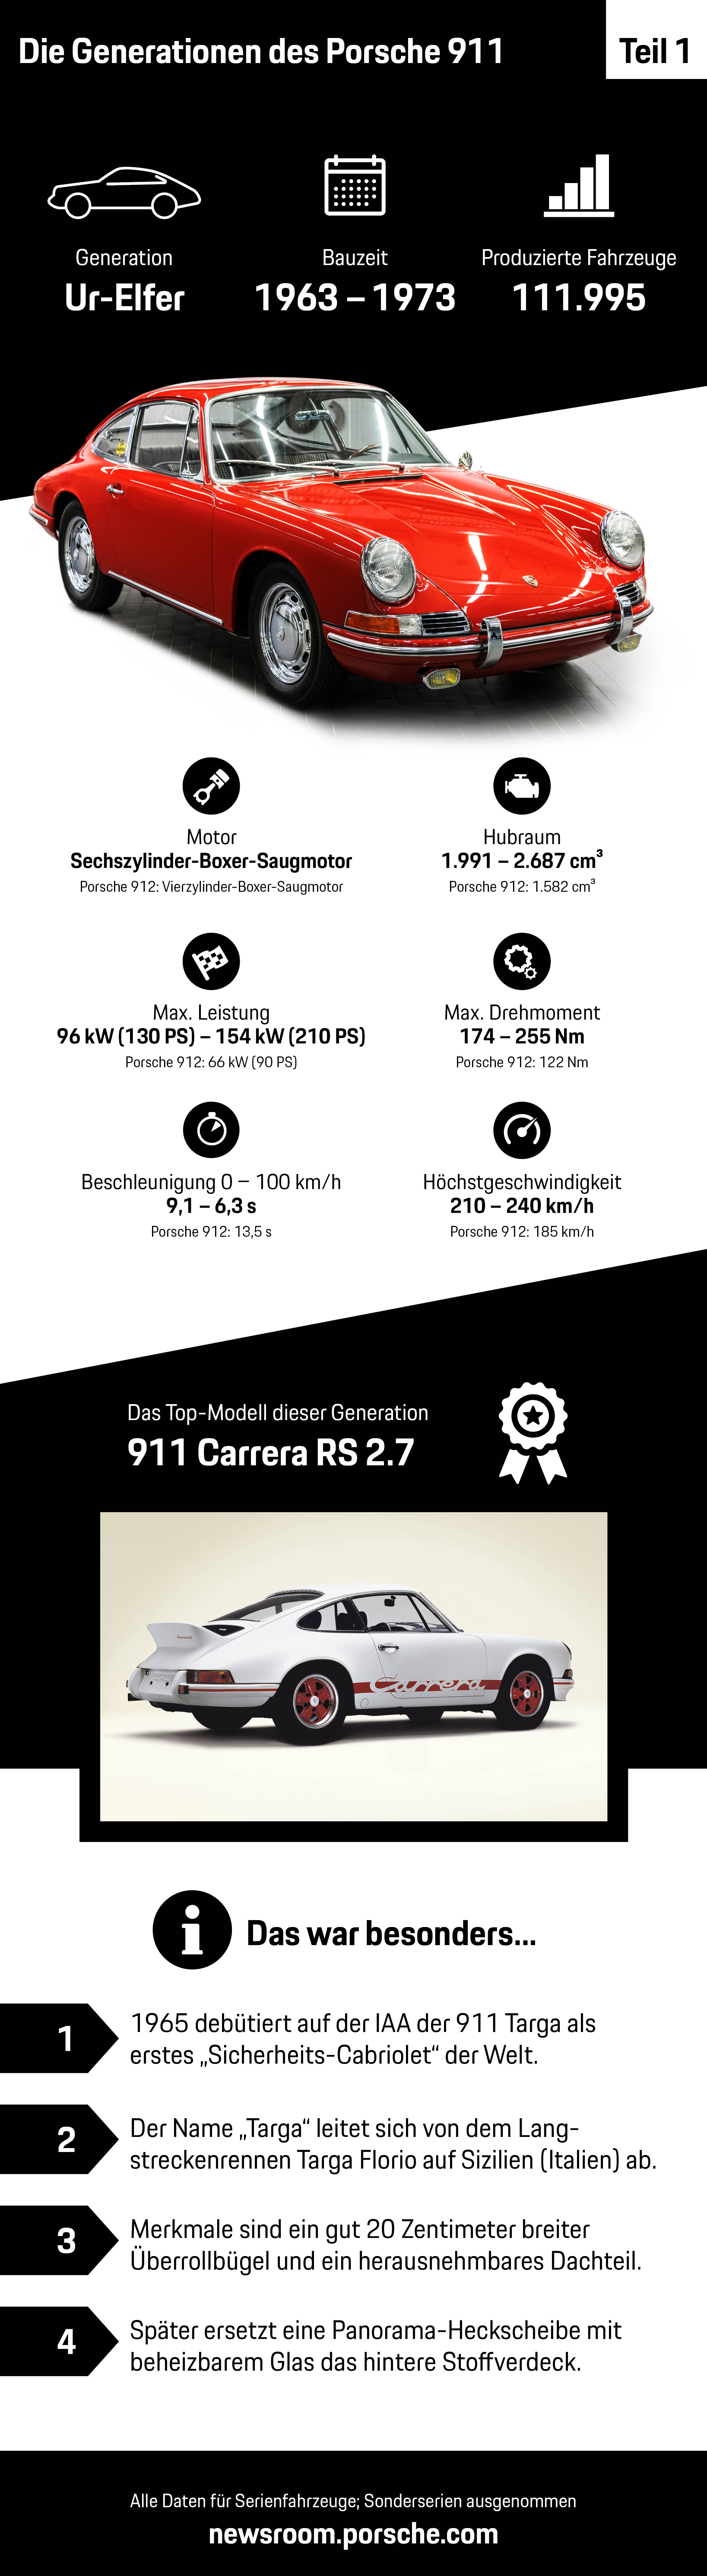 Die Generationen des Porsche 911 – Teil 1, Infografik, 2018, Porsche AG